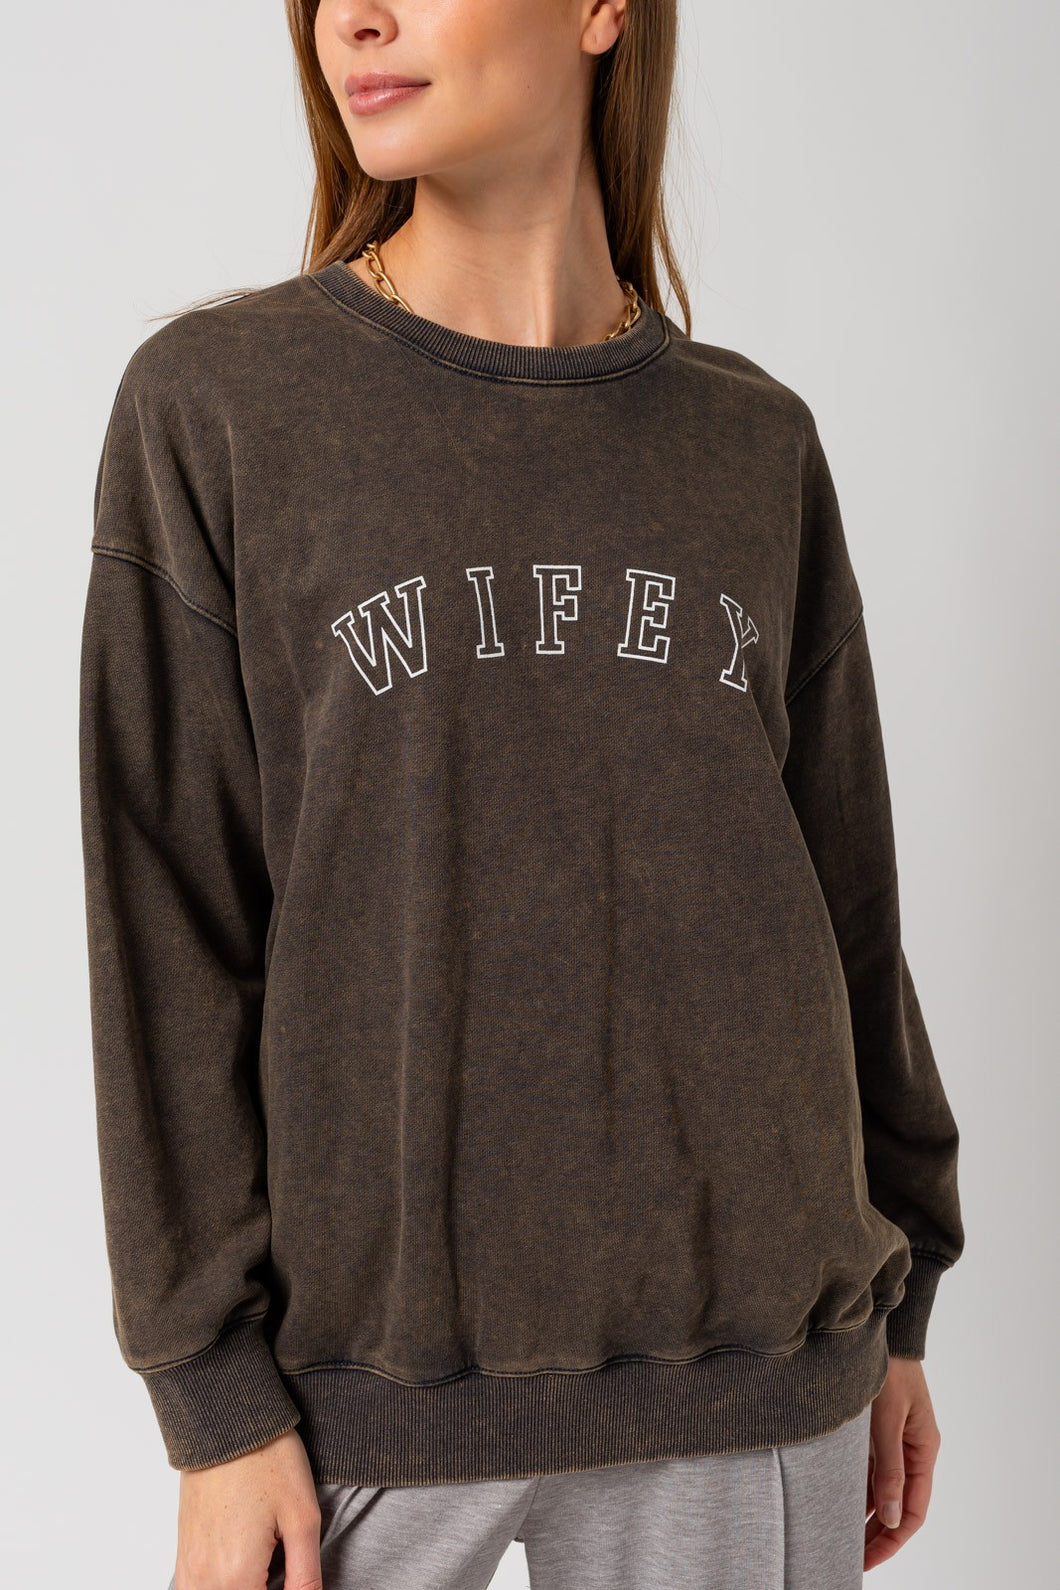 Wifey Charcoal Sweatshirt